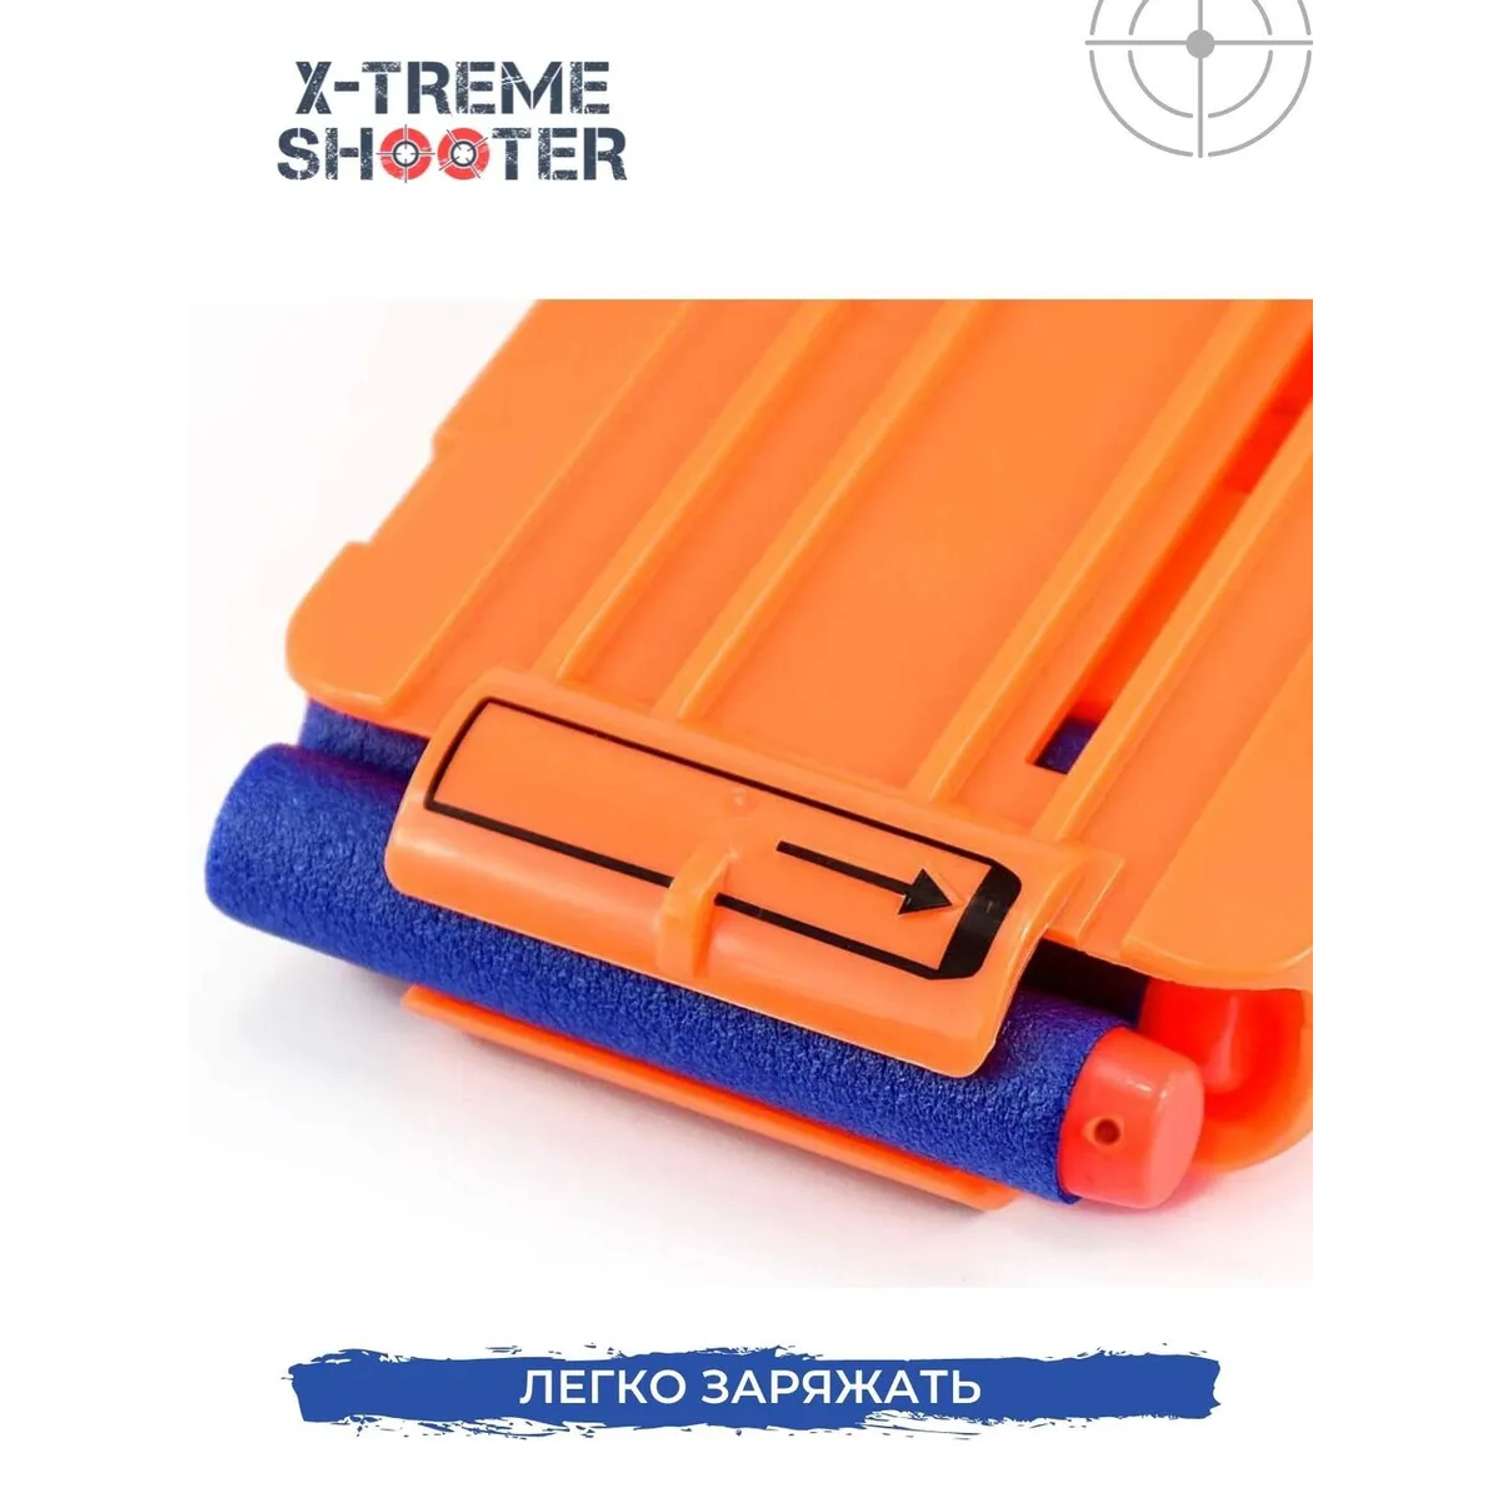 Обойма-магазин на 12 патронов X-Treme Shooter запасная для стрельбы из бластера Nerf игрушечного оружия пистолета Нерф - фото 4